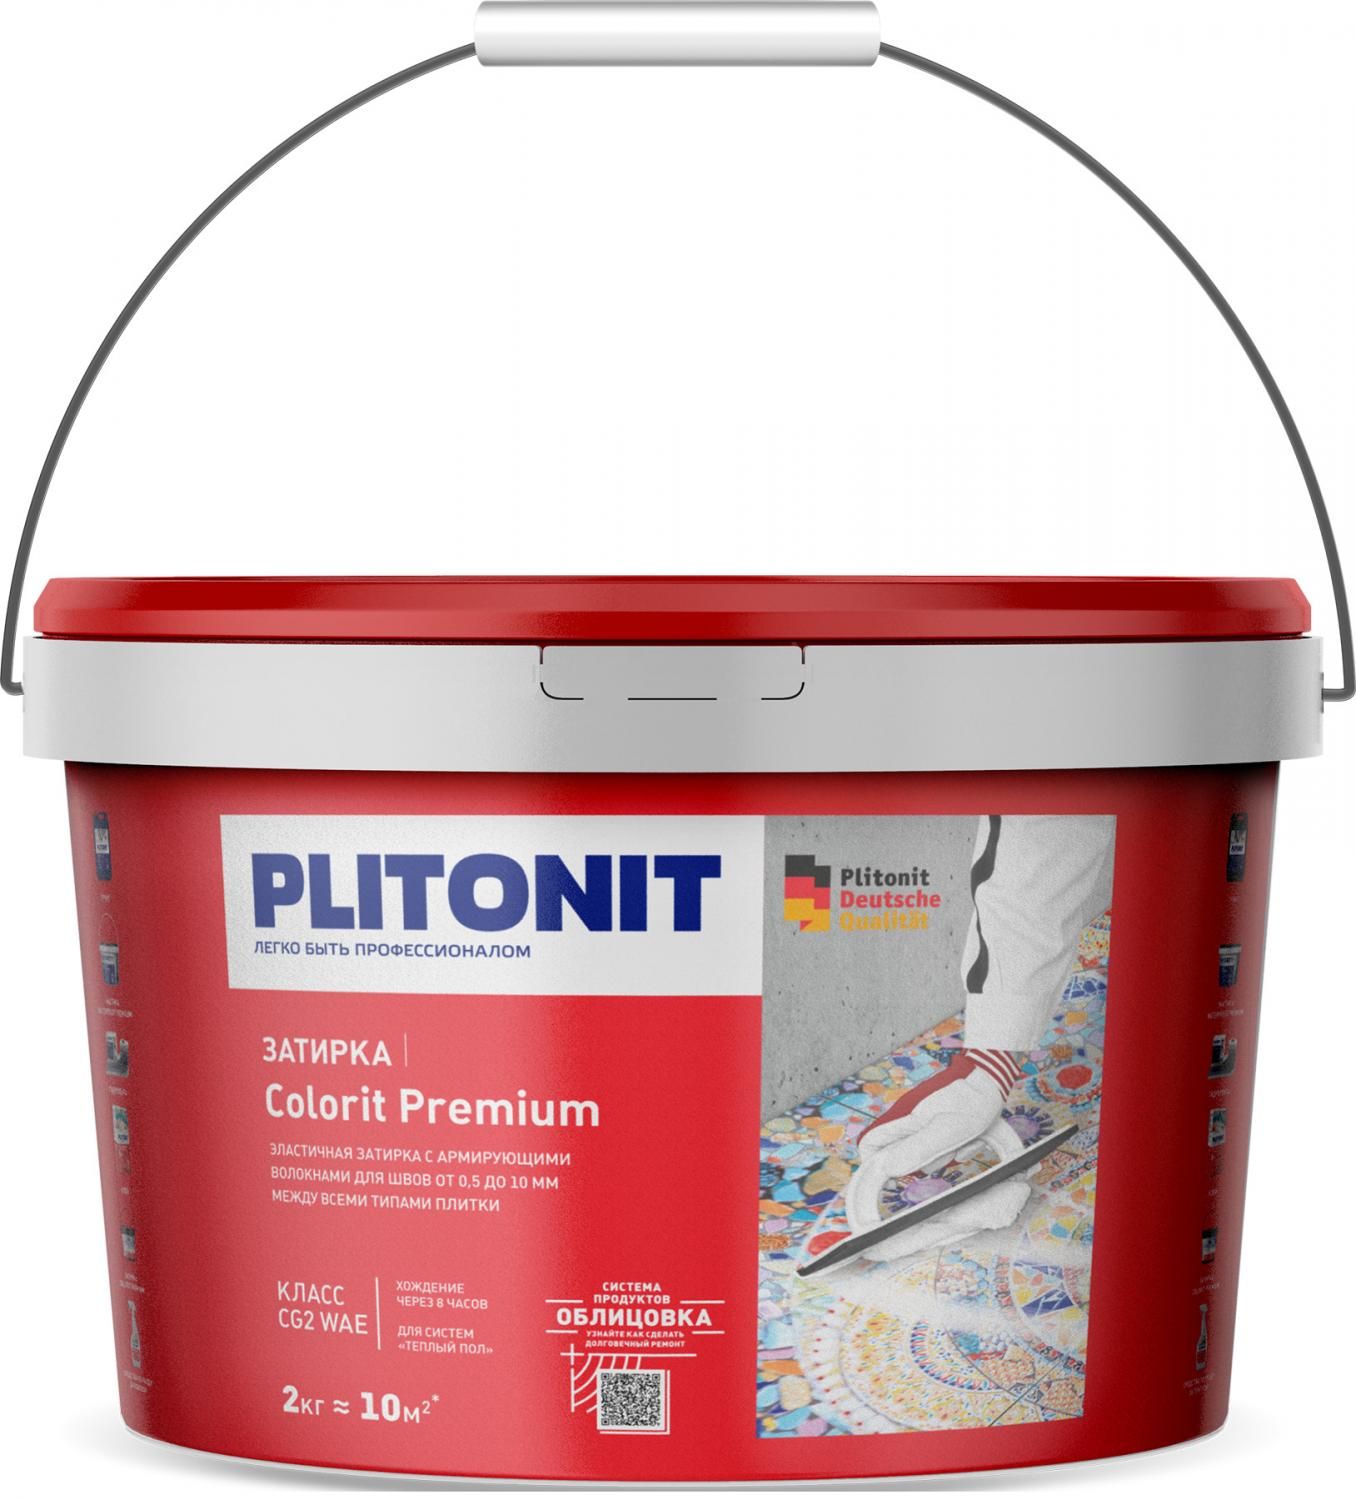 Купить Затирка Plitonit Colorit Premium светло-розовая 2 кг цементная